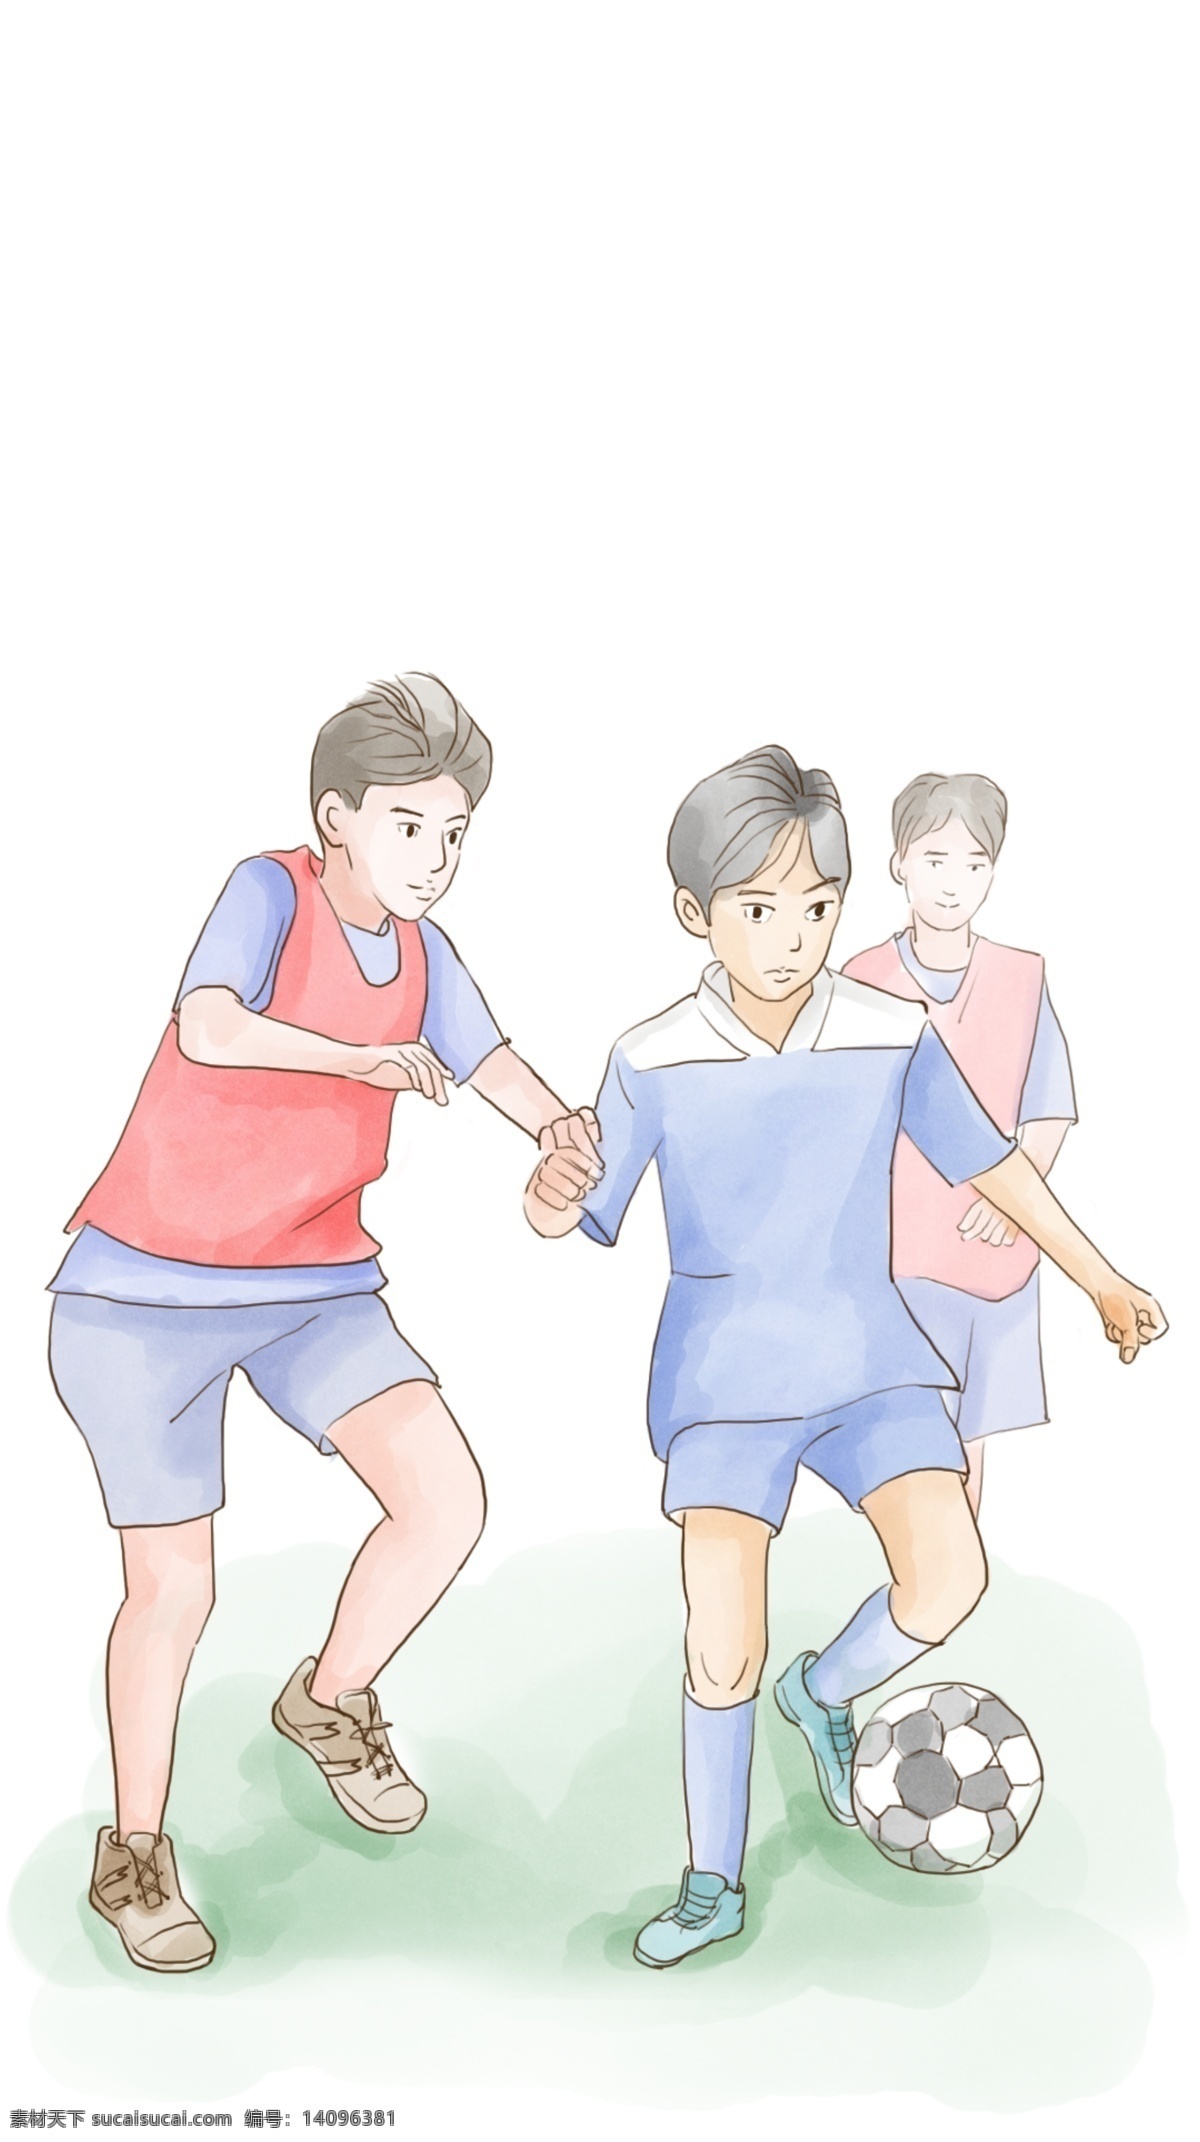 青少年踢足球 足球 草地 踢足球 少年足球队 足球友谊赛 活动 动漫动画 动漫人物